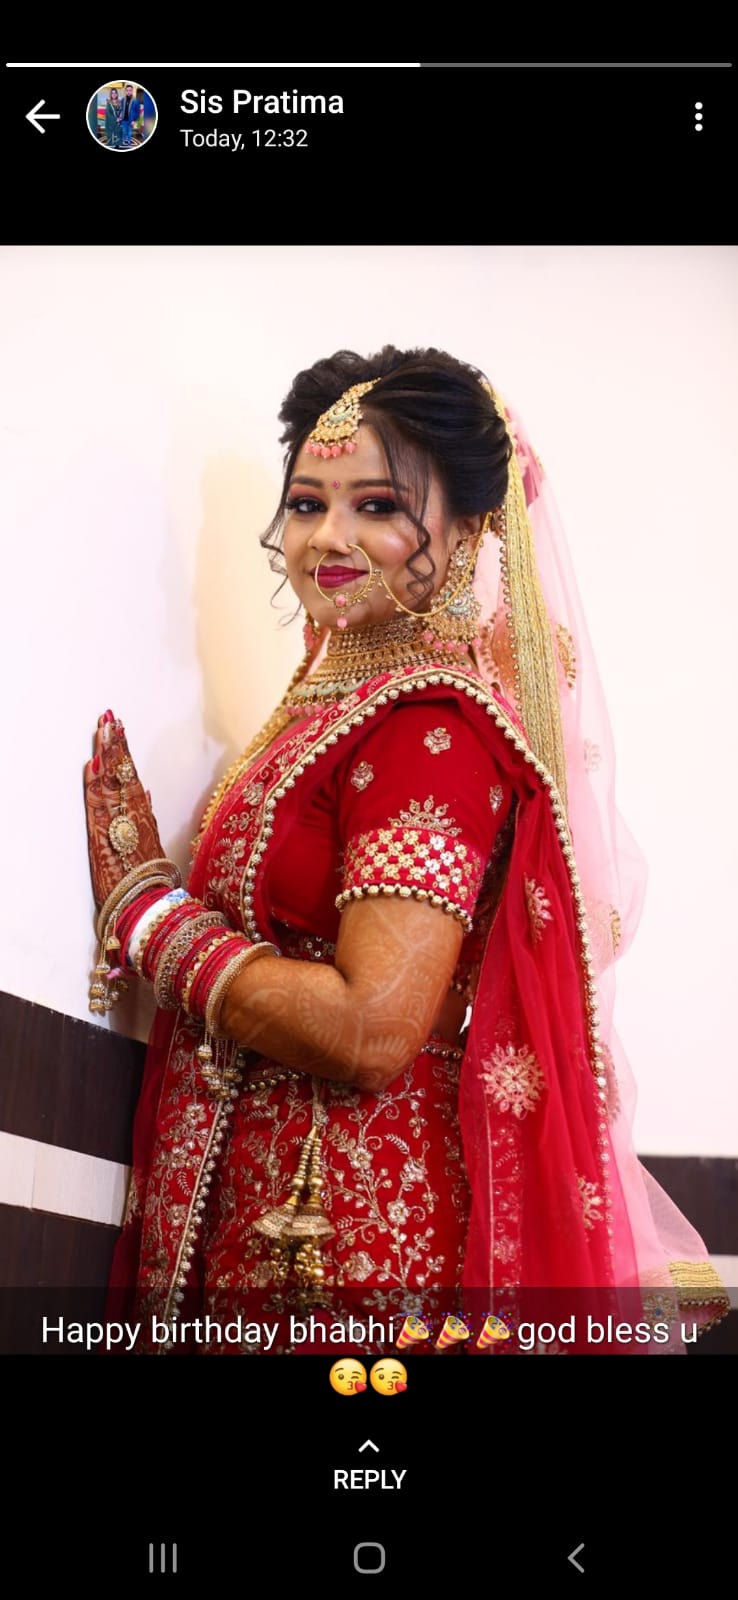 tanvi-jain-makeup-artist-delhi-ncr